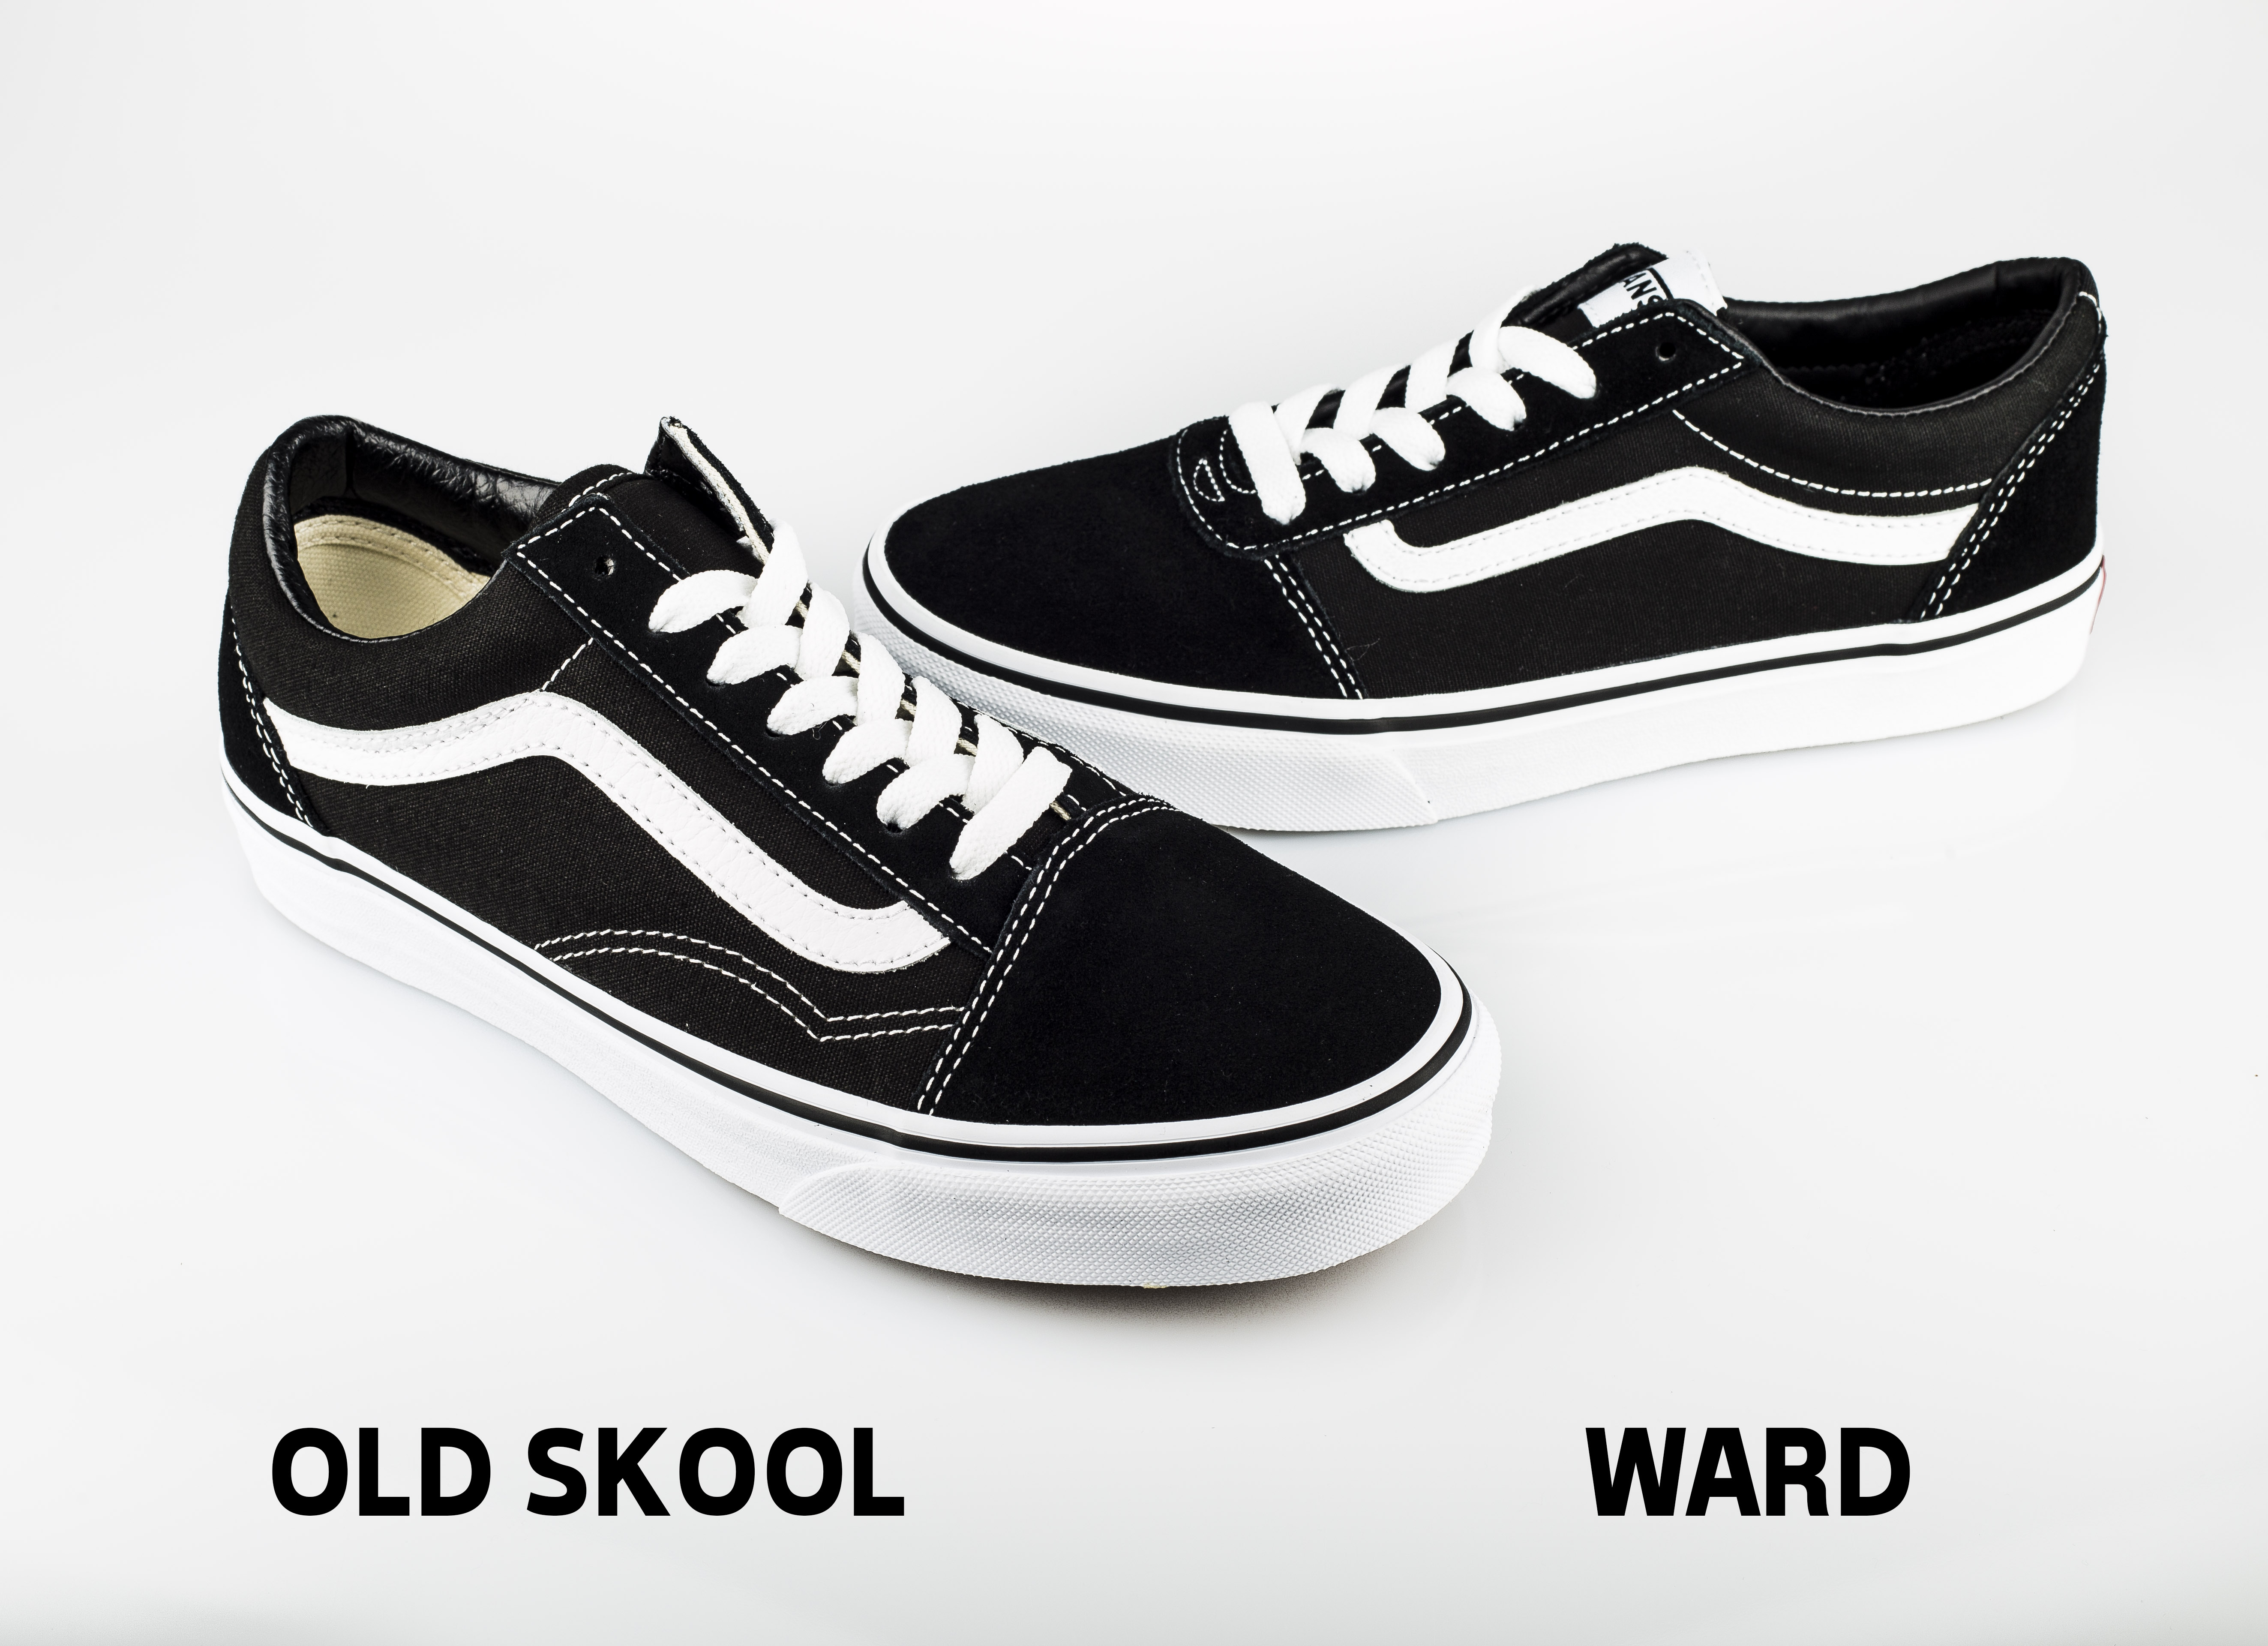 vans ward sneakers vs old skool